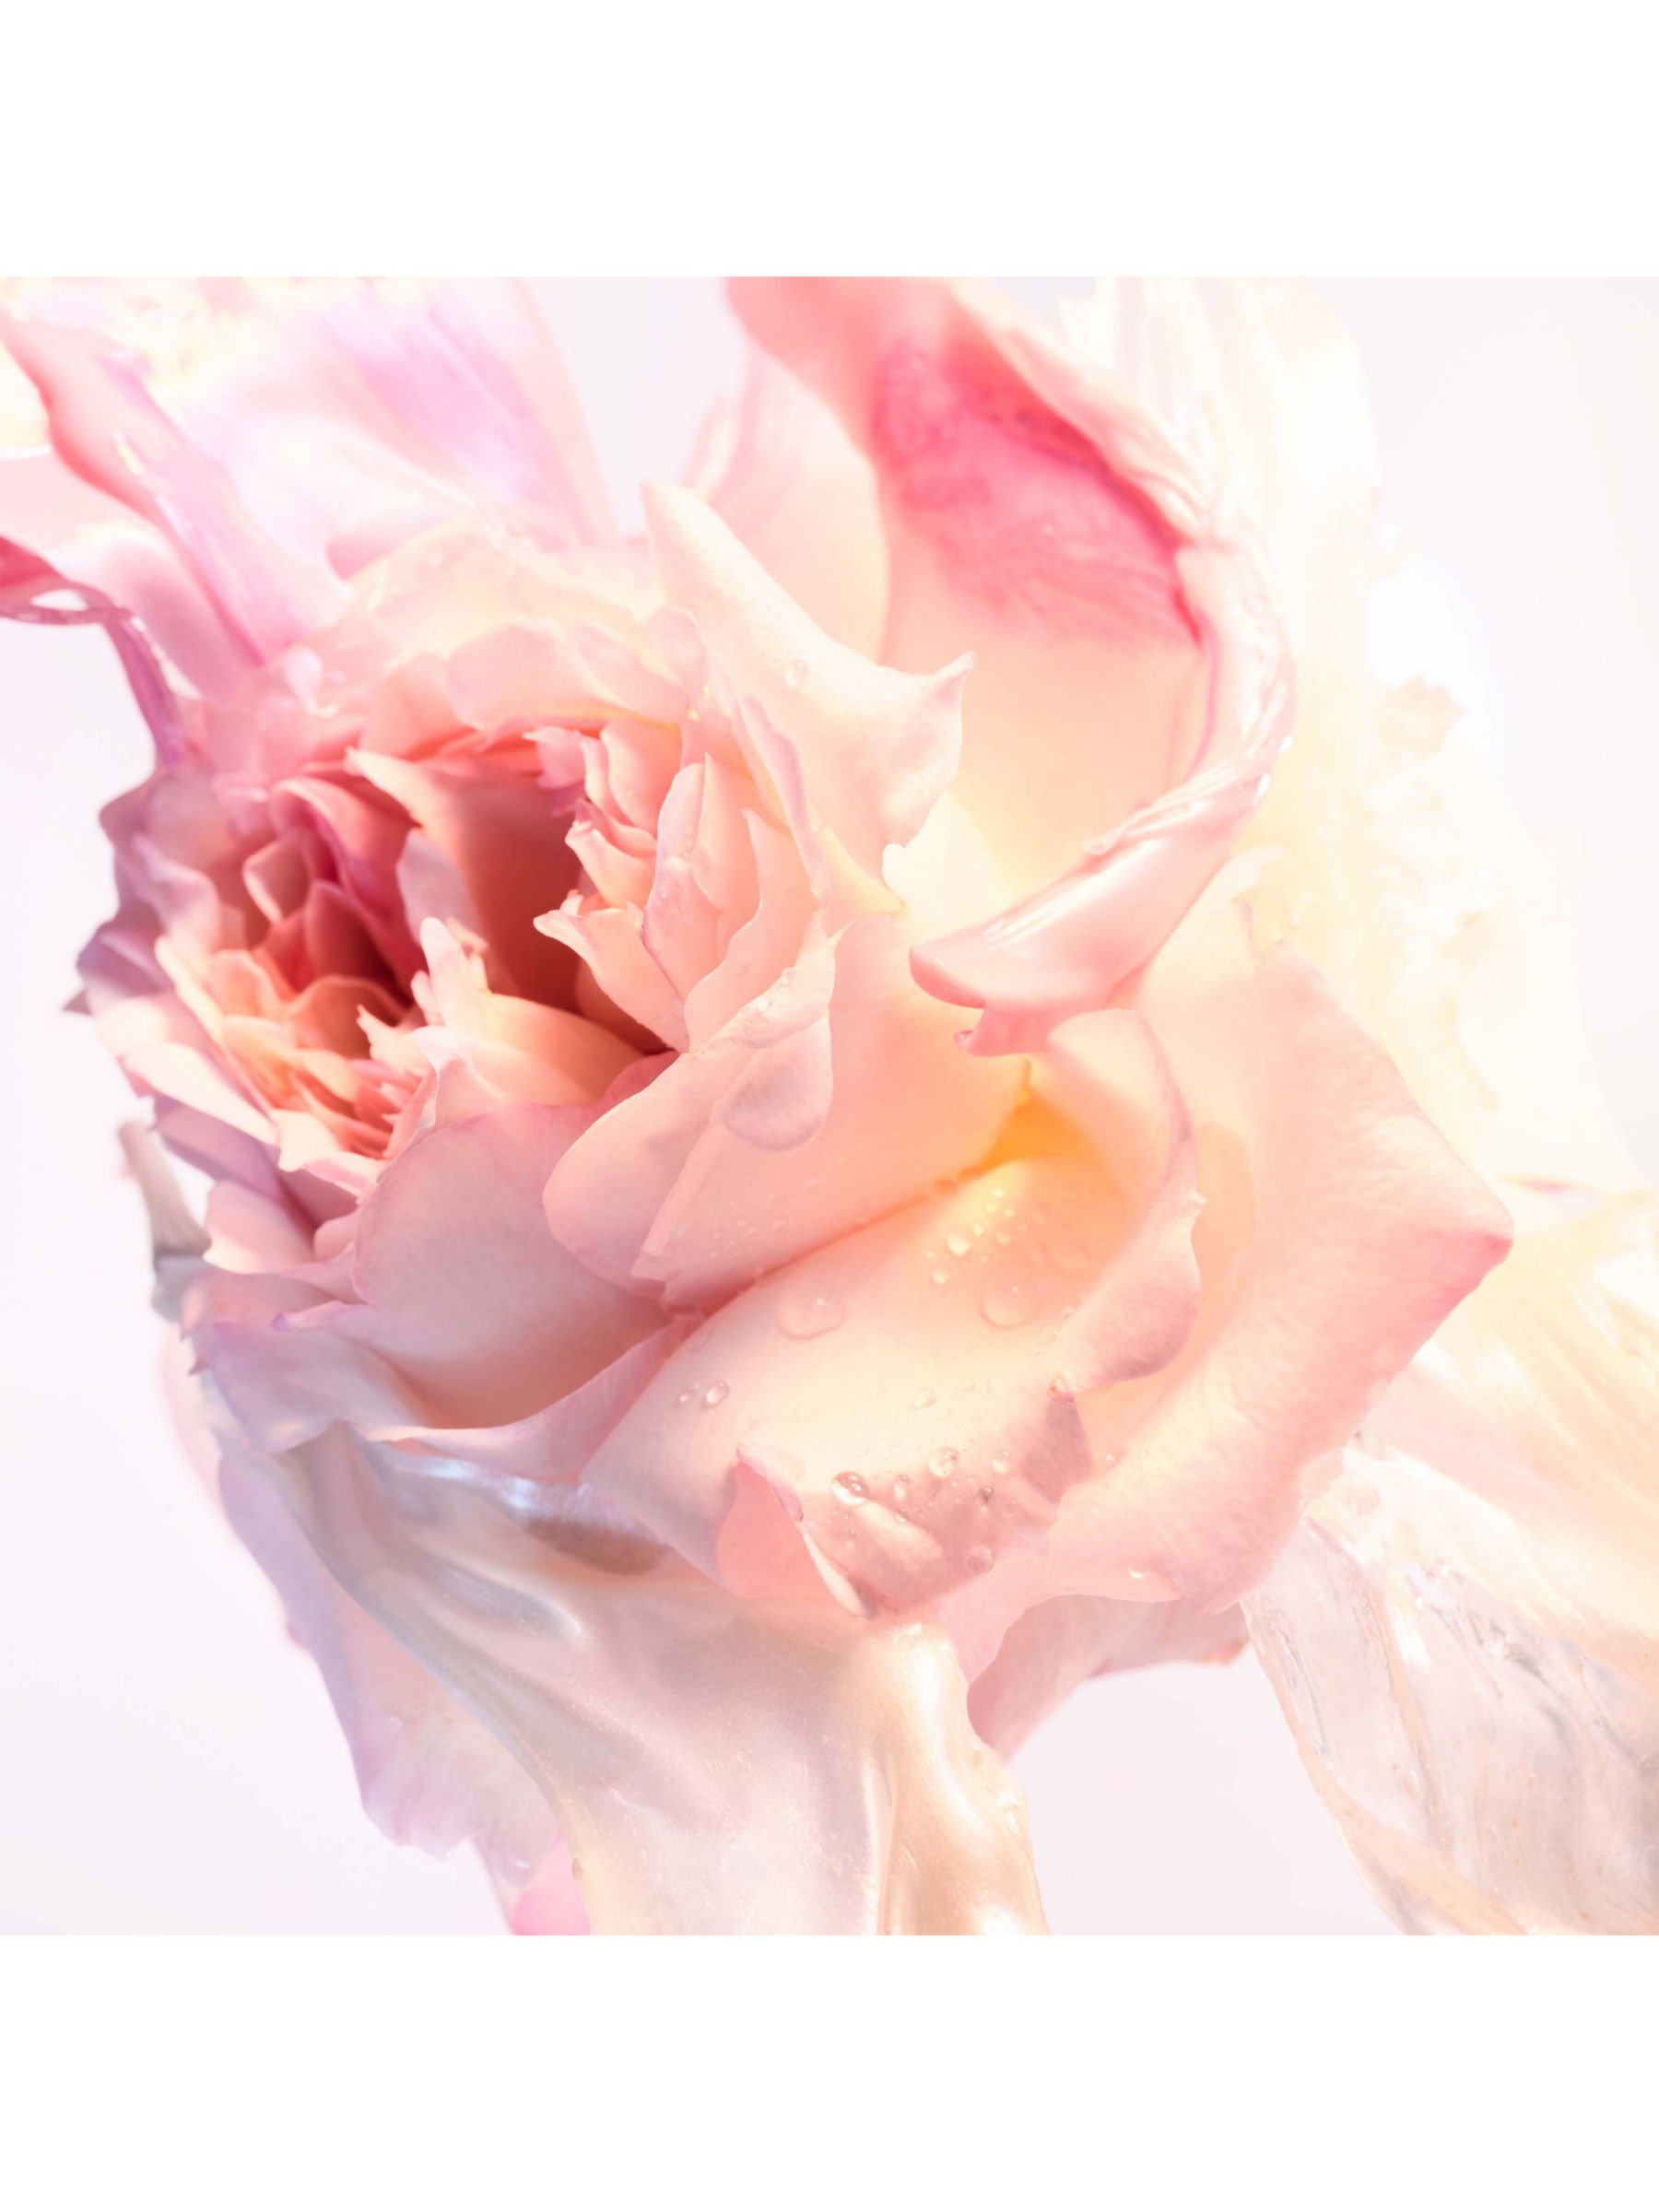 BVLGARI Rose Goldea Blossom Delight Eau de Toilette, 50ml 4